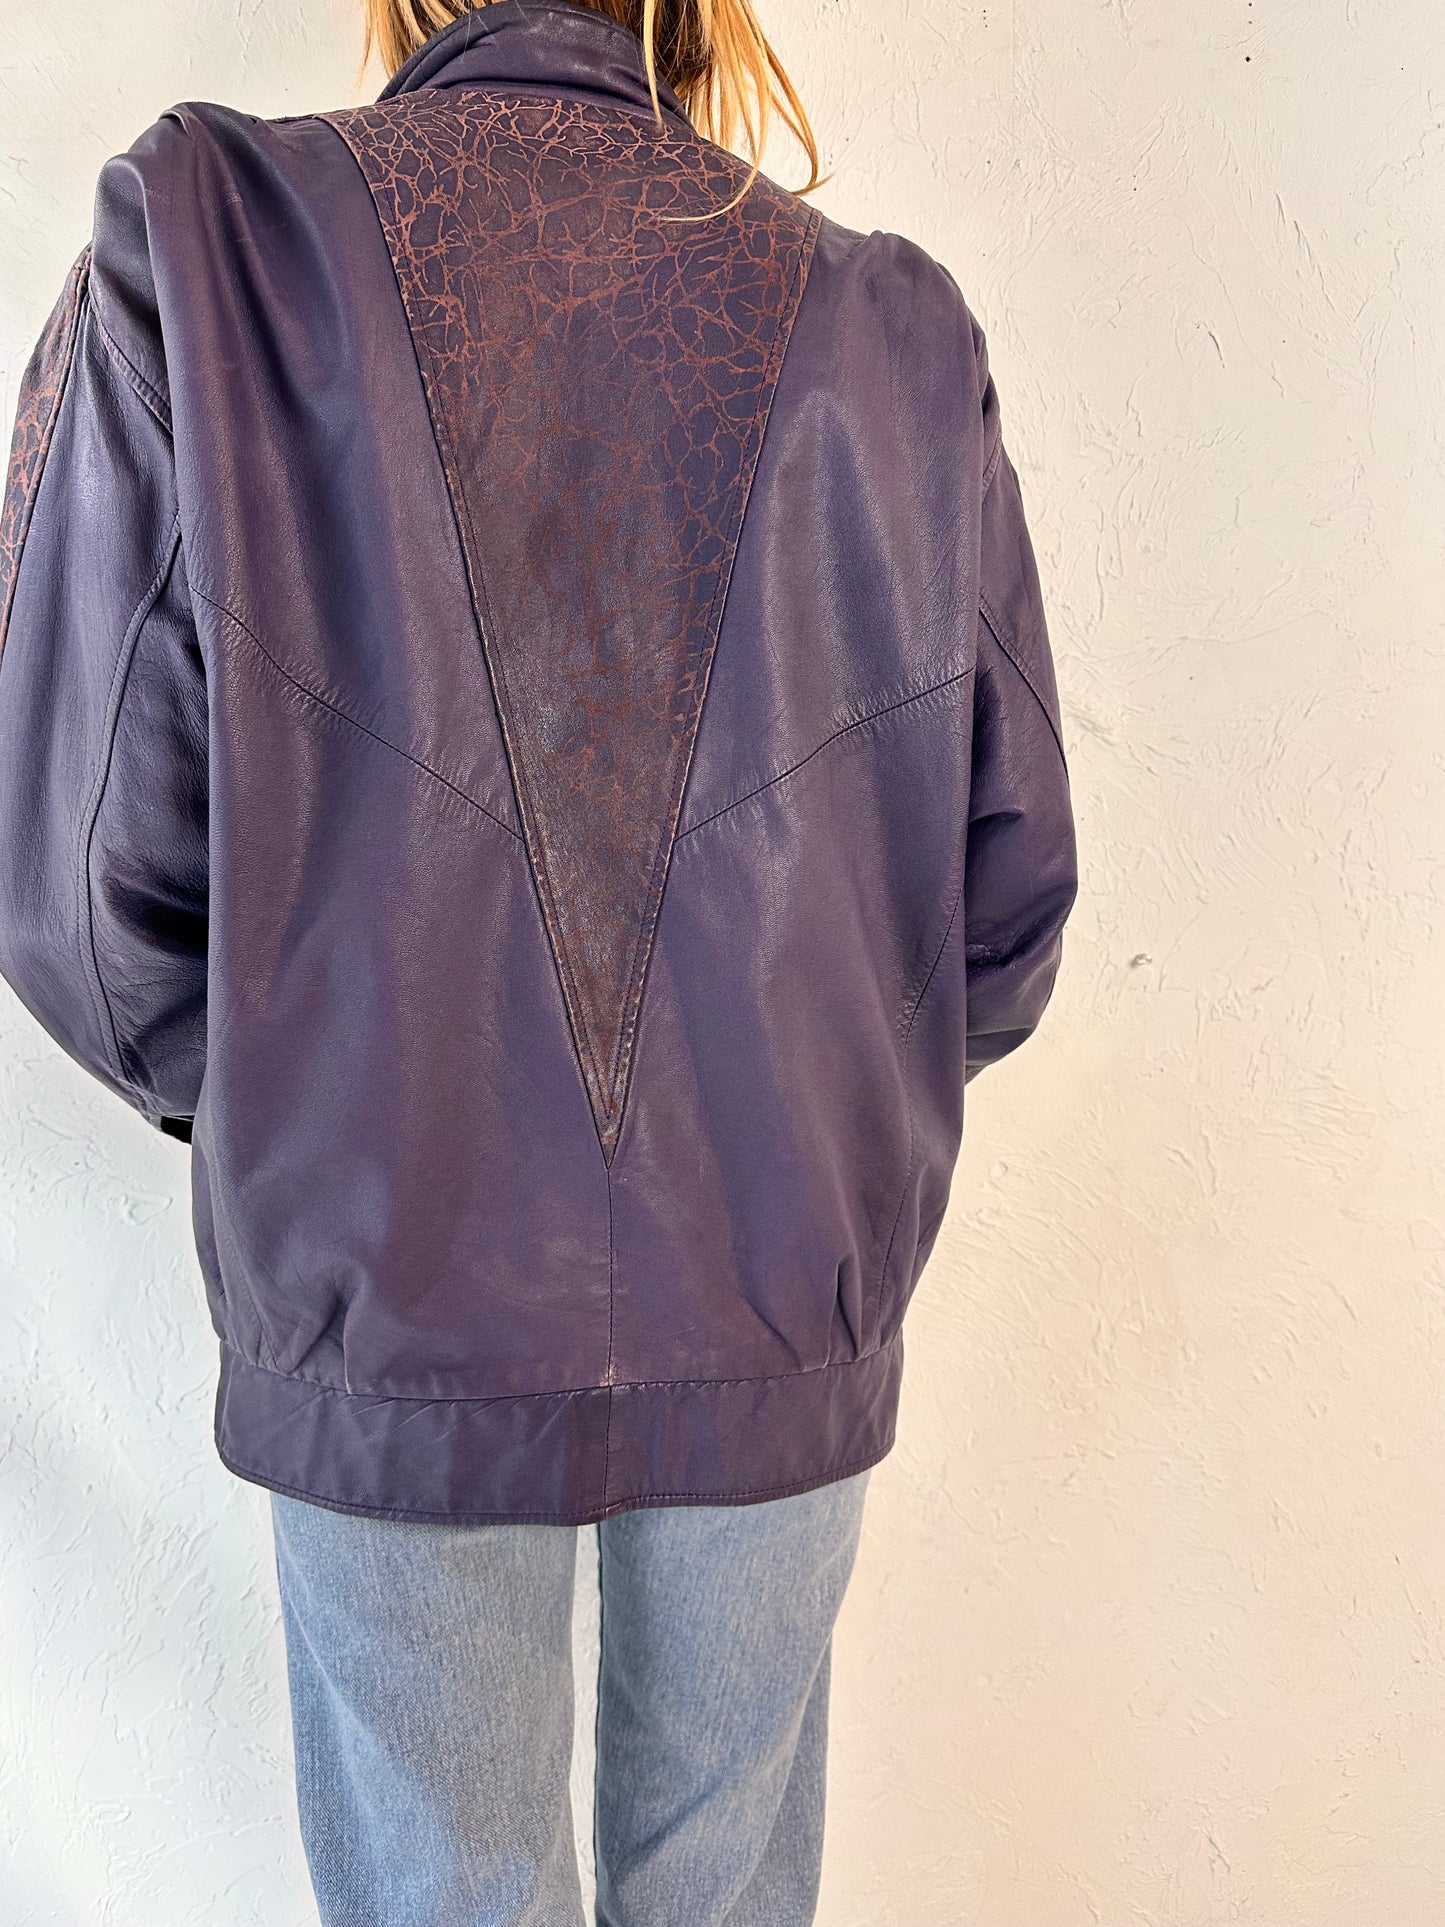 90s Purple Leather Jacket / Medium